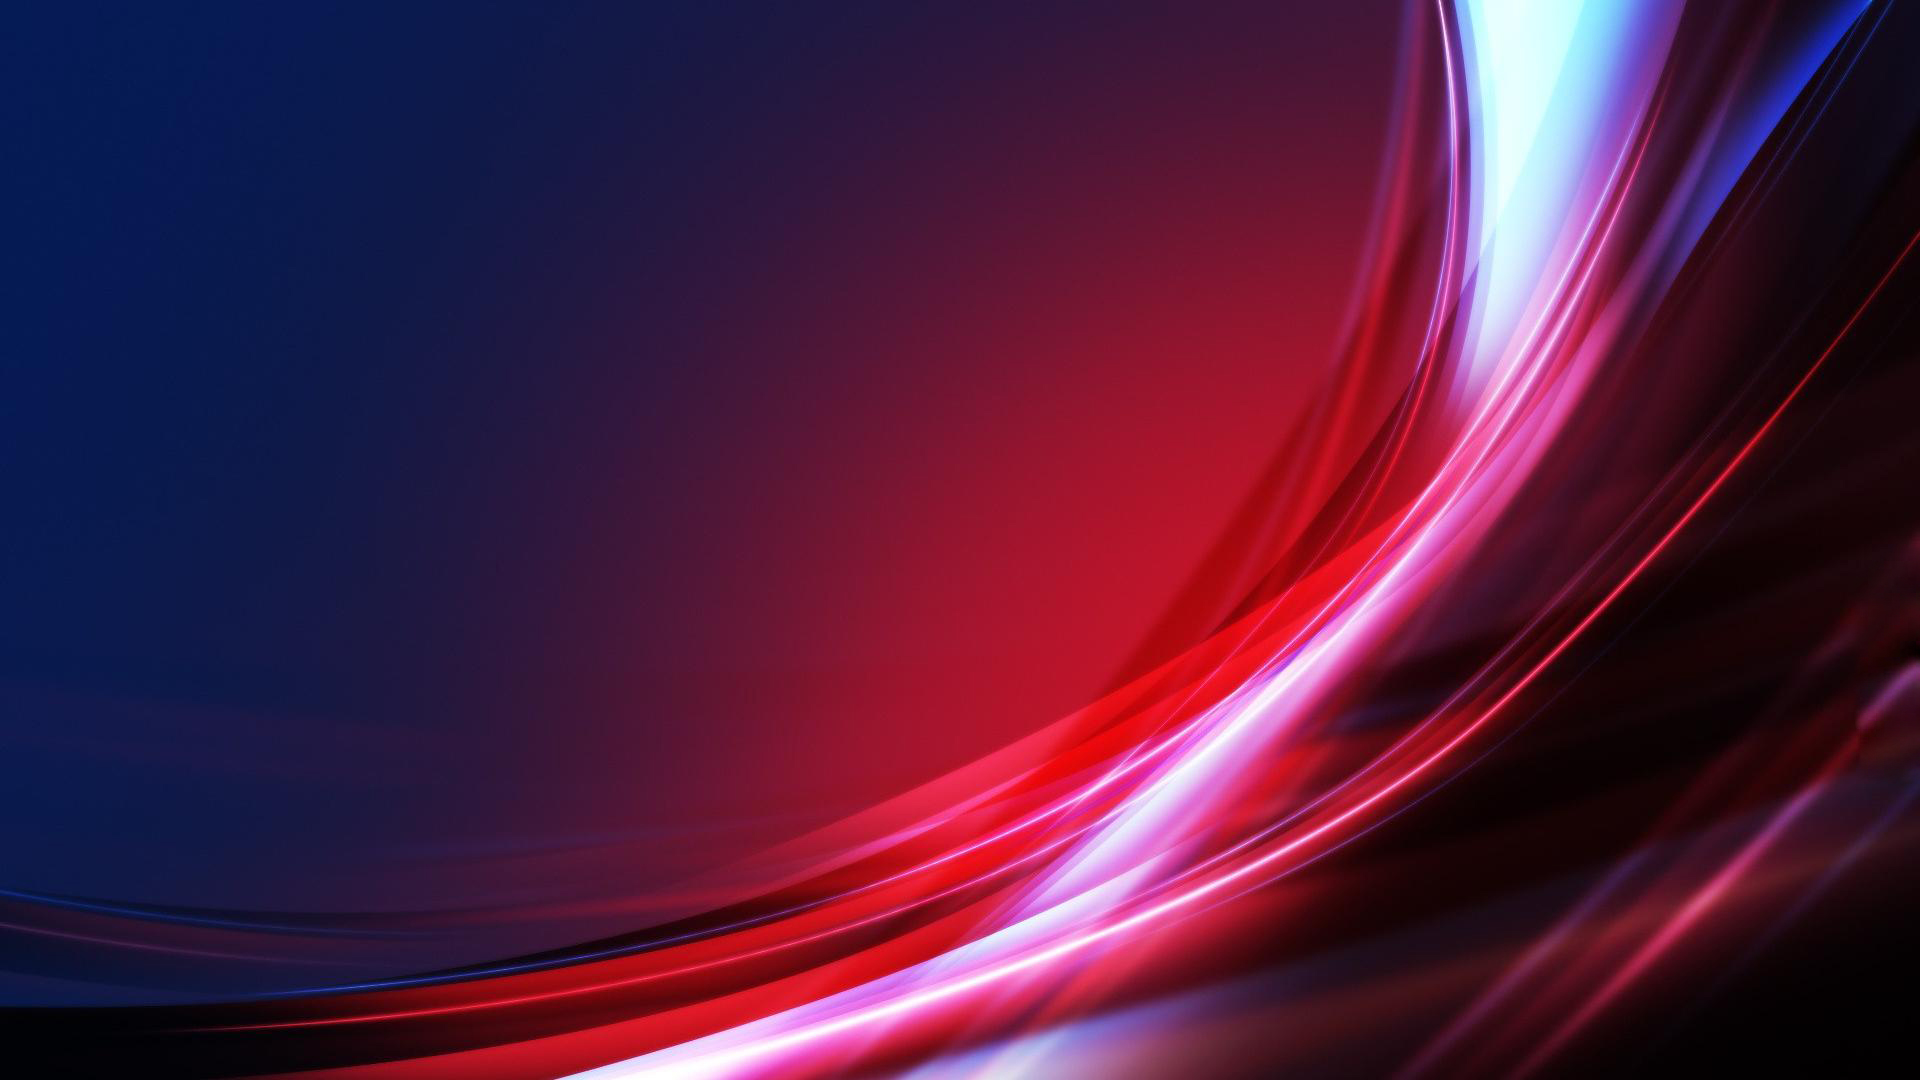 sfondo per il desktop hd,blu,rosso,leggero,viola,rosa